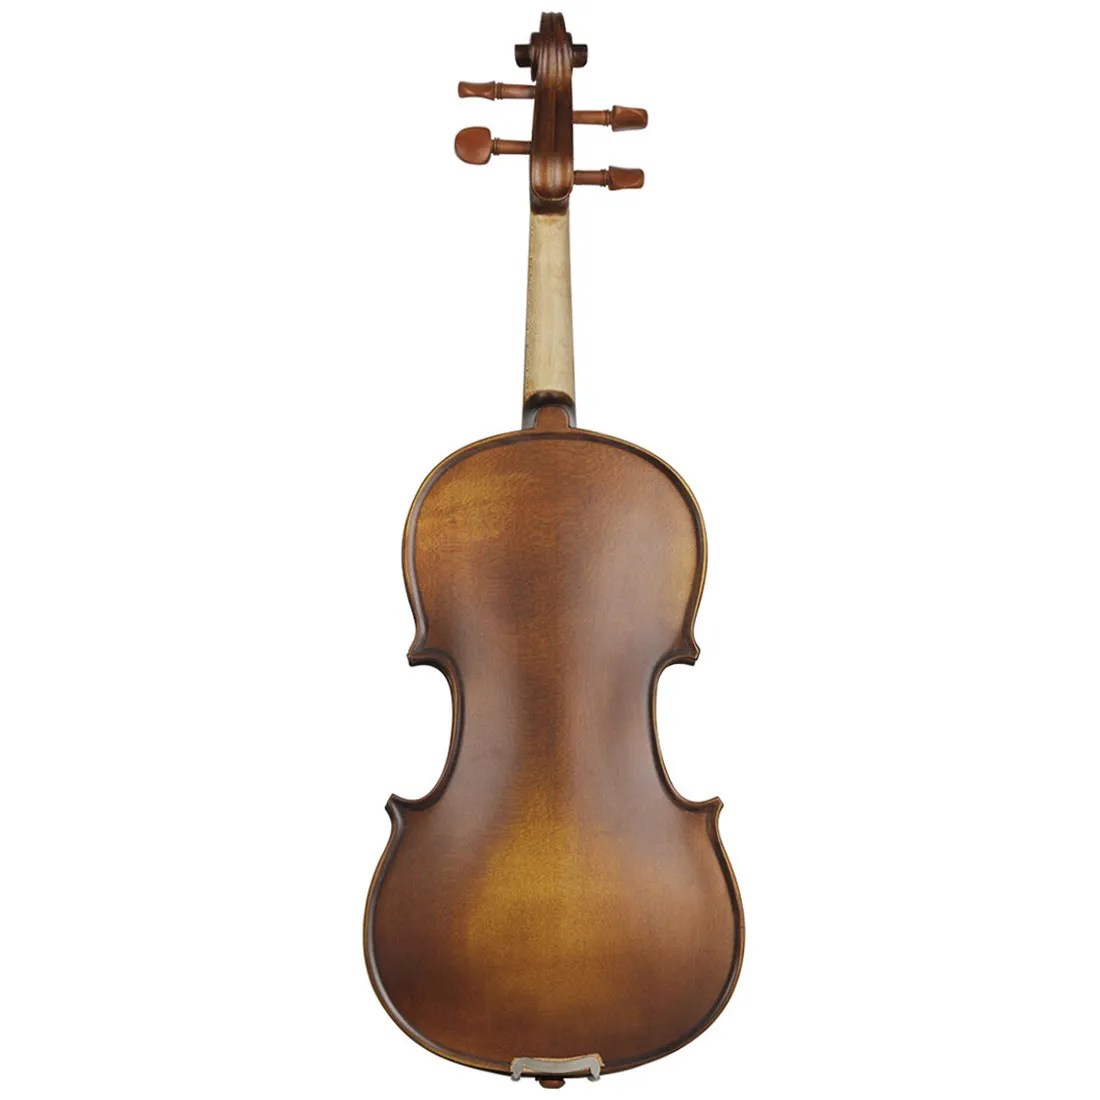 Violon haut de gamme pur violon antique fait main 4/4 gamme complète d'instruments de jeu de violon professionnel en bois de jujube 4/4